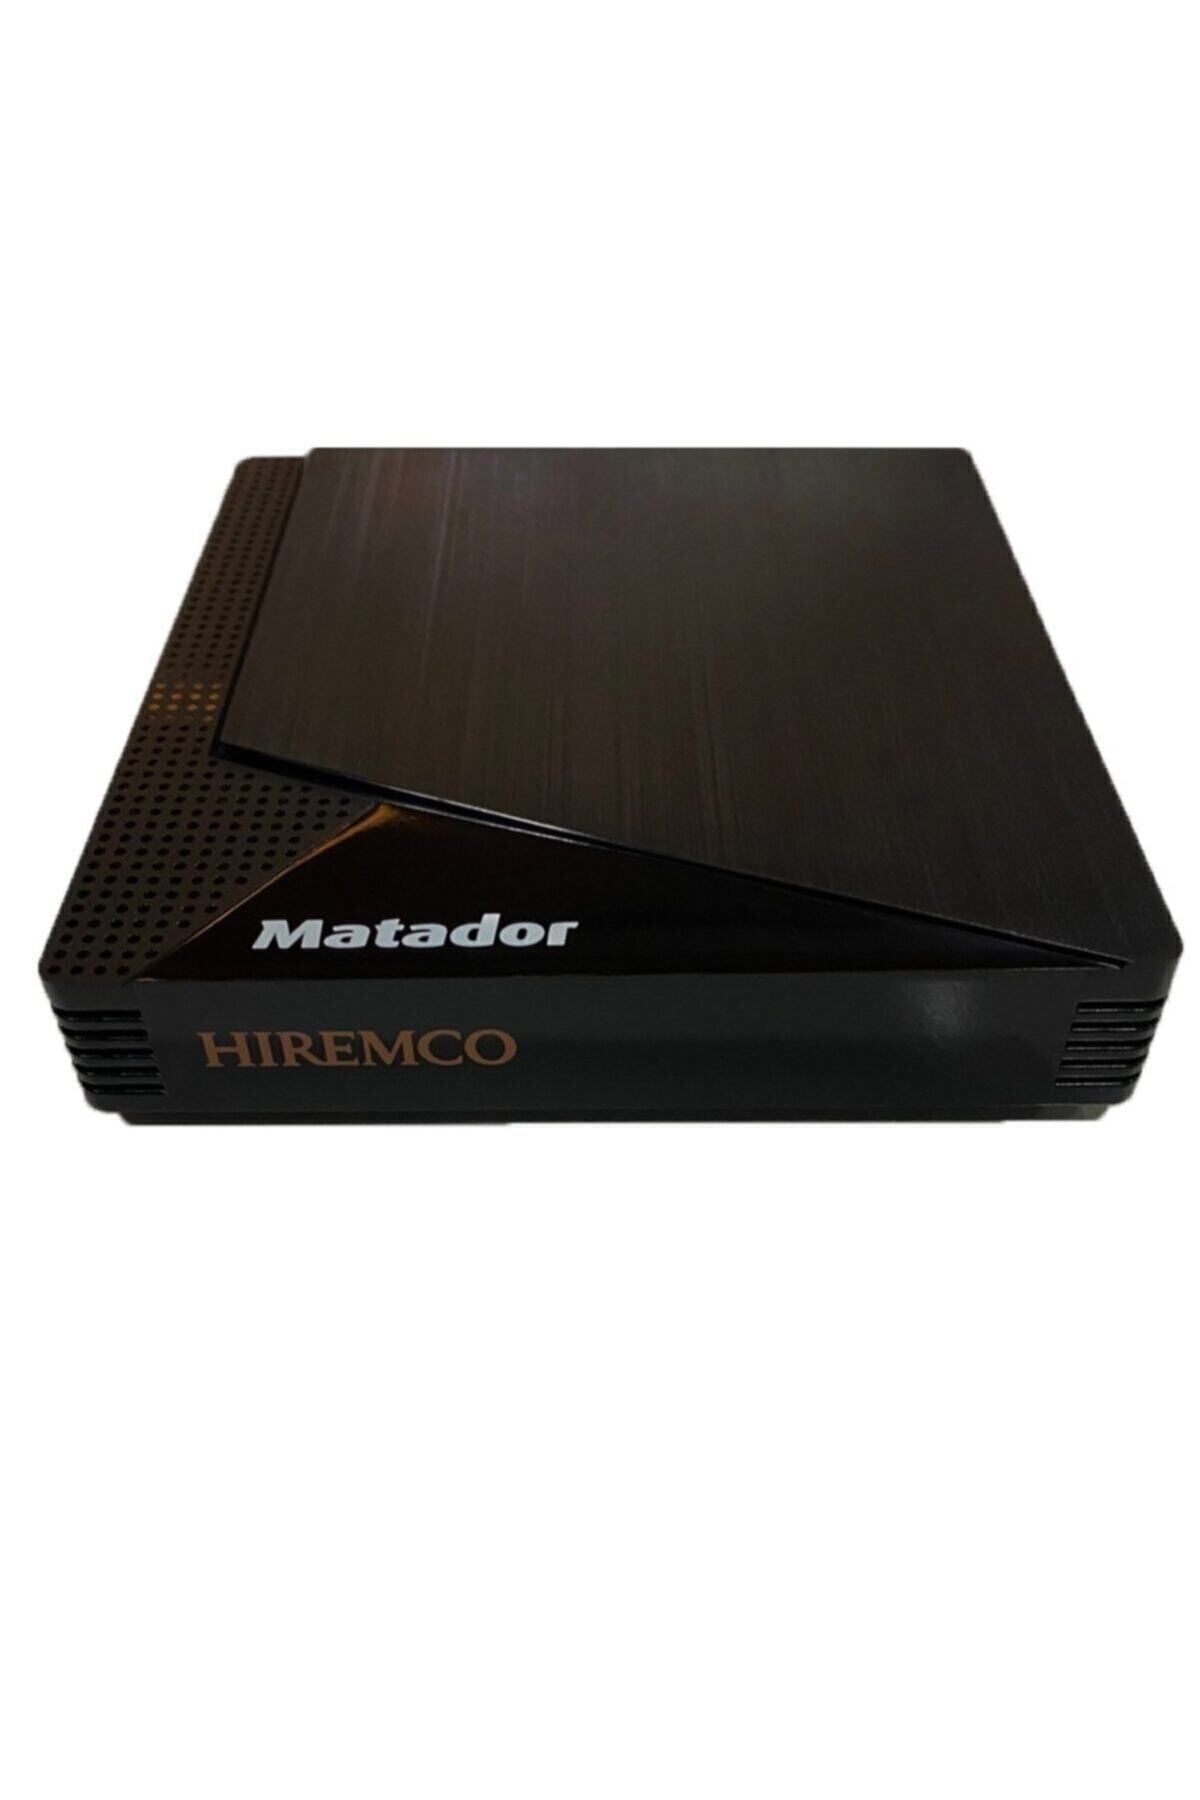 Hiremco Matador Pro Air Android Box